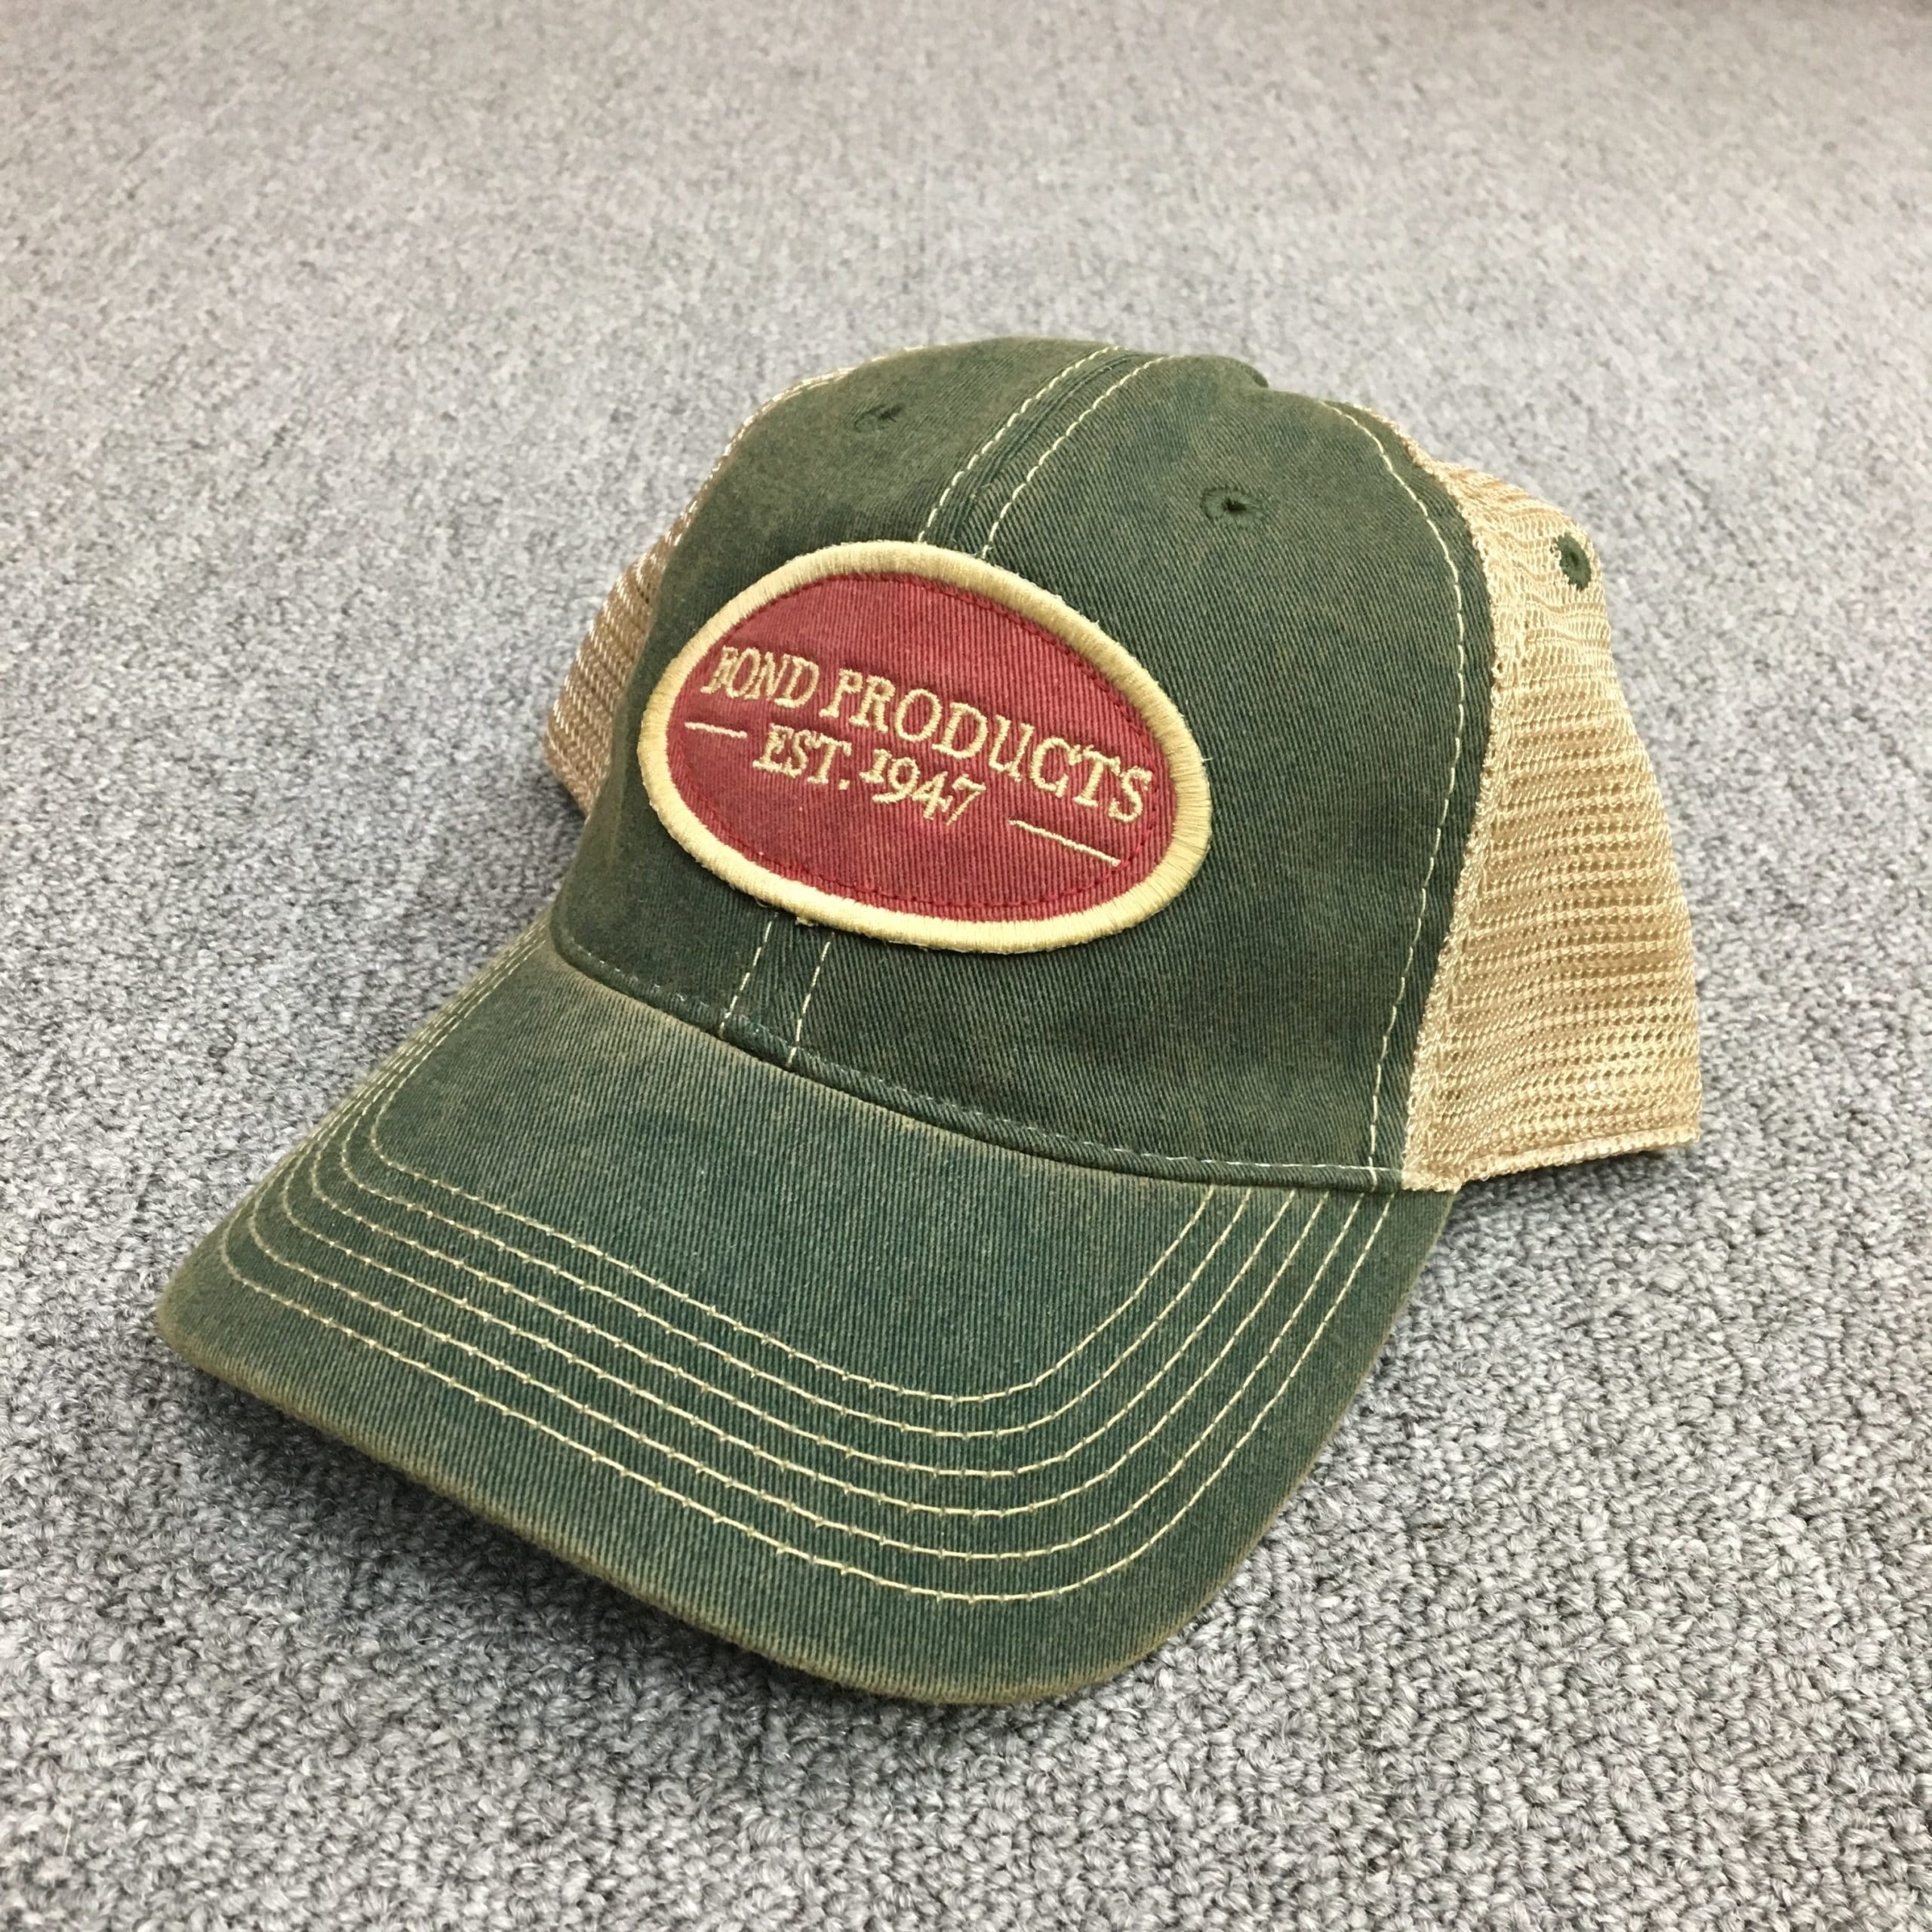 Bond Products Inc Vintage Hat